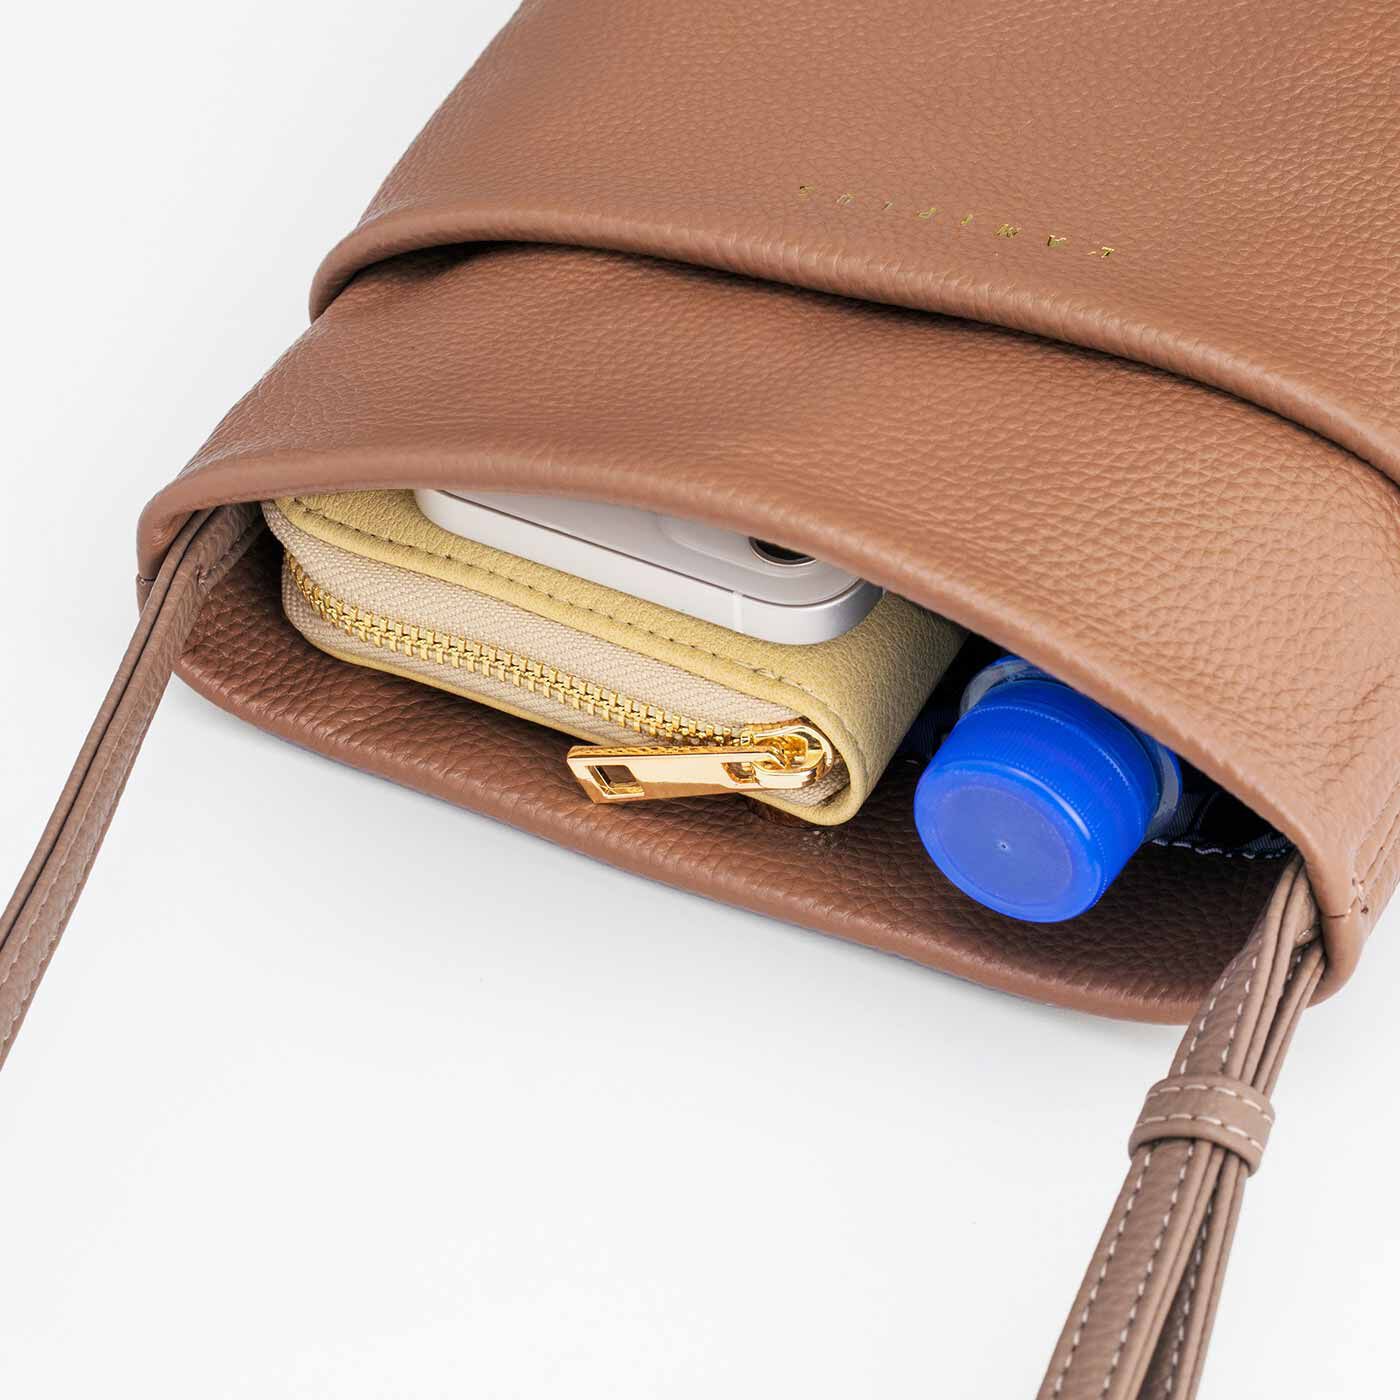 L'AMIPLUS|ラミプリュス　ポケットみたいに使い心地軽やか 本革ショルダーマイポッケ〈フラワーモカブラウン〉|長財布、スマホ、350mlペットボトルがすっぽり。内側のファスナーポケットには、かぎなどを入れて。